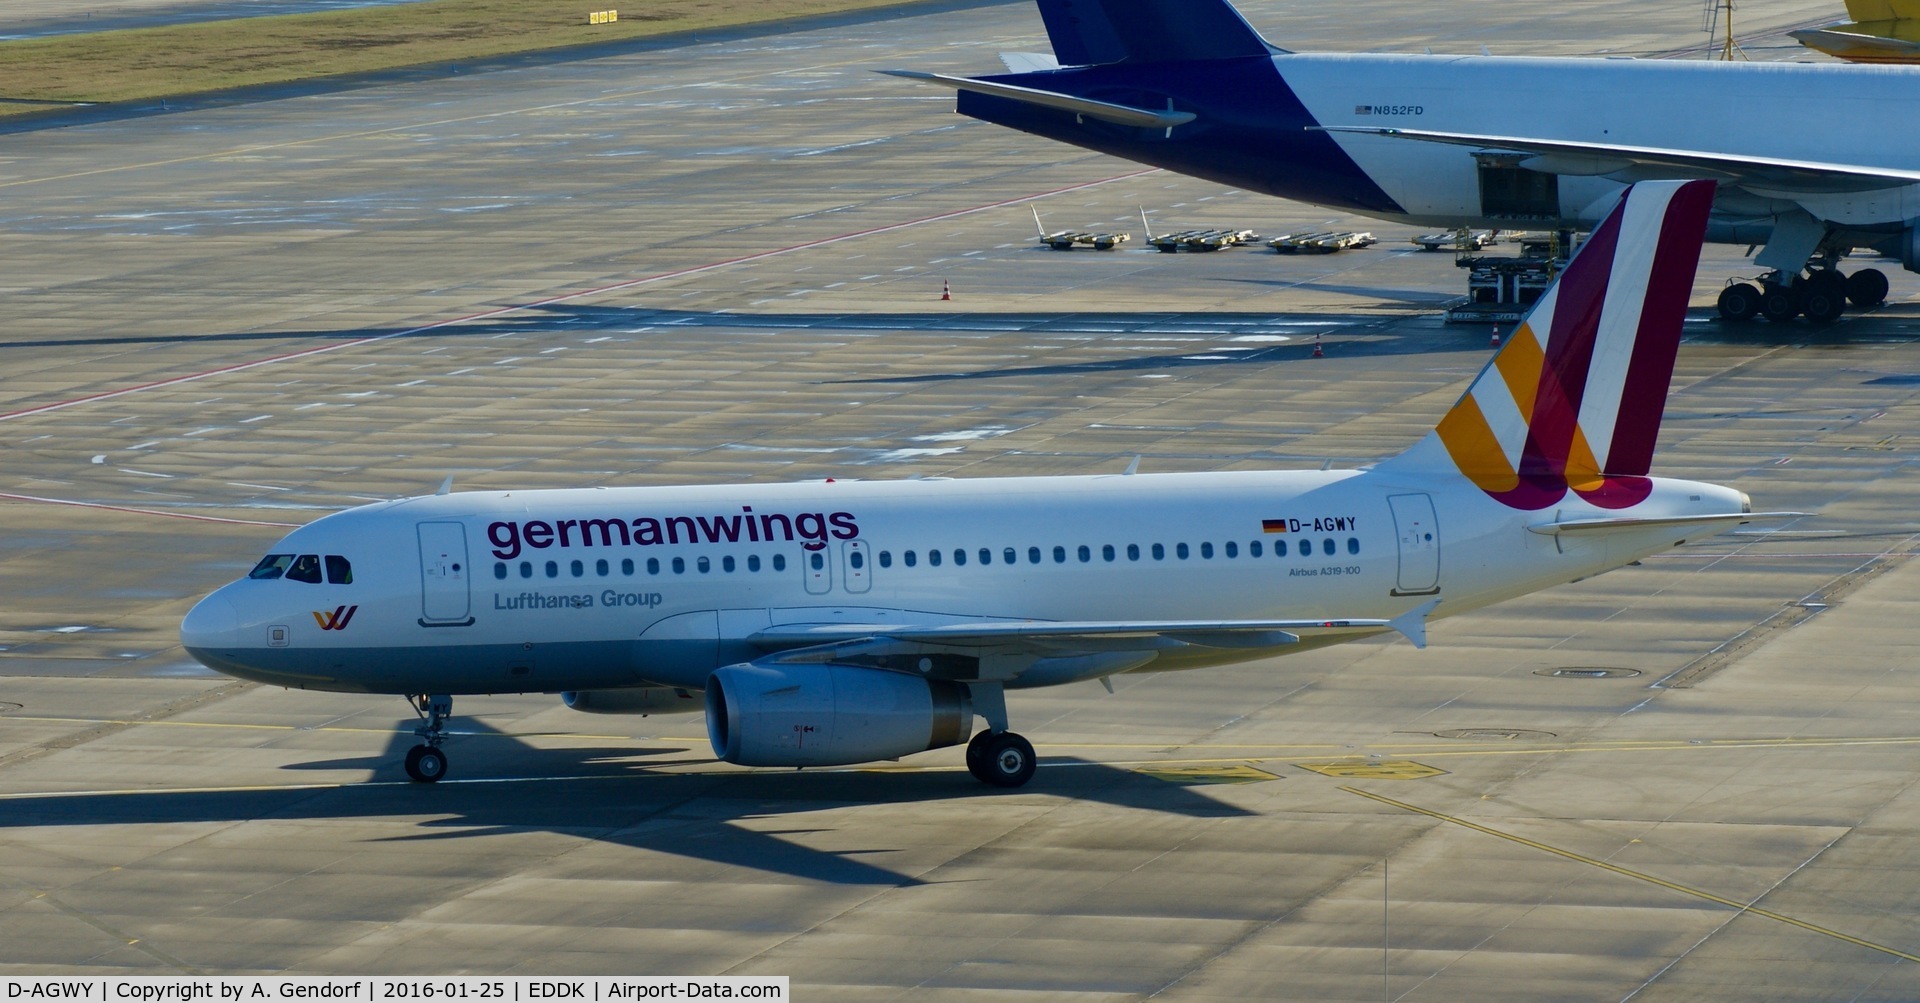 D-AGWY, 2013 Airbus A319-132 C/N 5941, Germanwings, is here taxiing at Köln / Bonn Airport(EDDK)